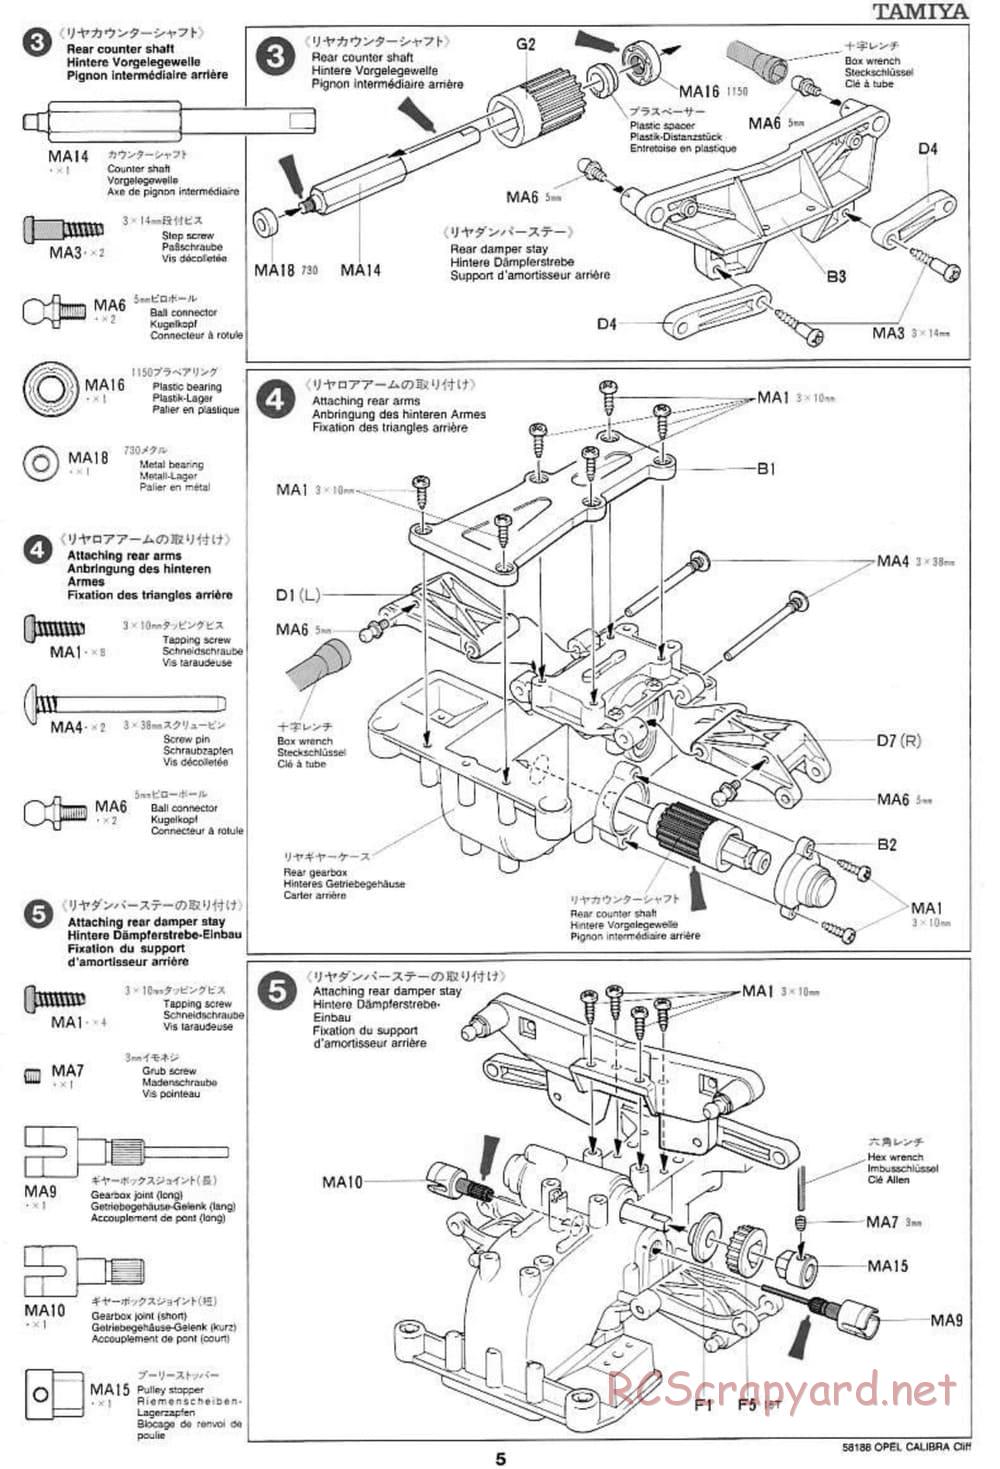 Tamiya - Opel Calibra Cliff - TA-03F Chassis - Manual - Page 5